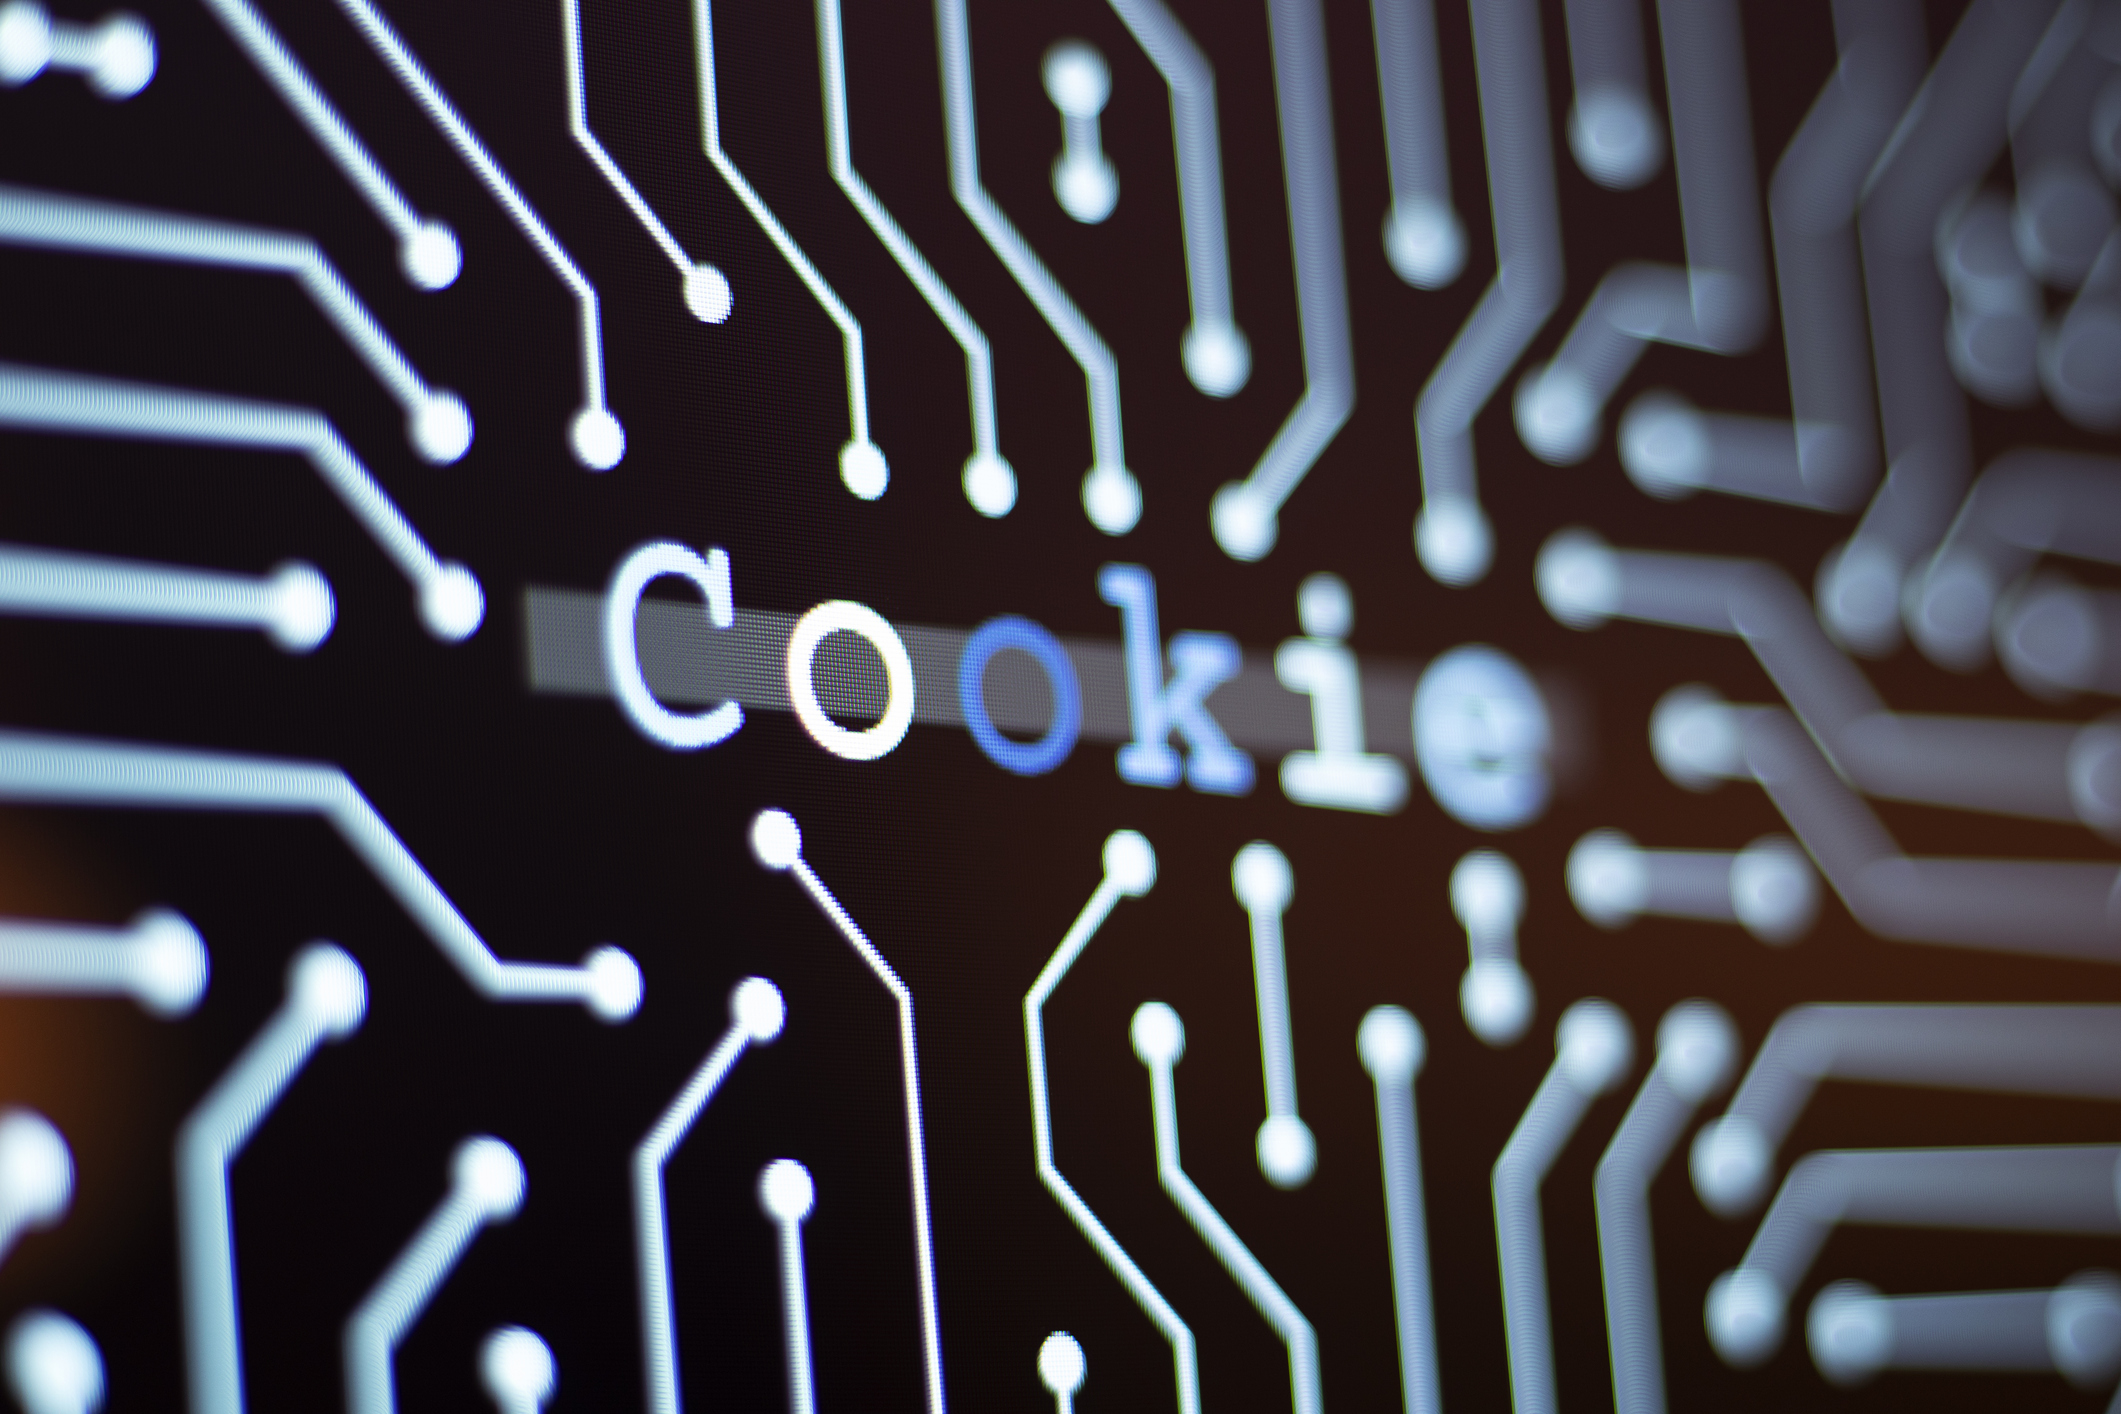 Devido a dificuldade em se adequar às legislações europeias, o fim do uso dos cookies foi novamente adiado pelo Google, desta vez para 2025